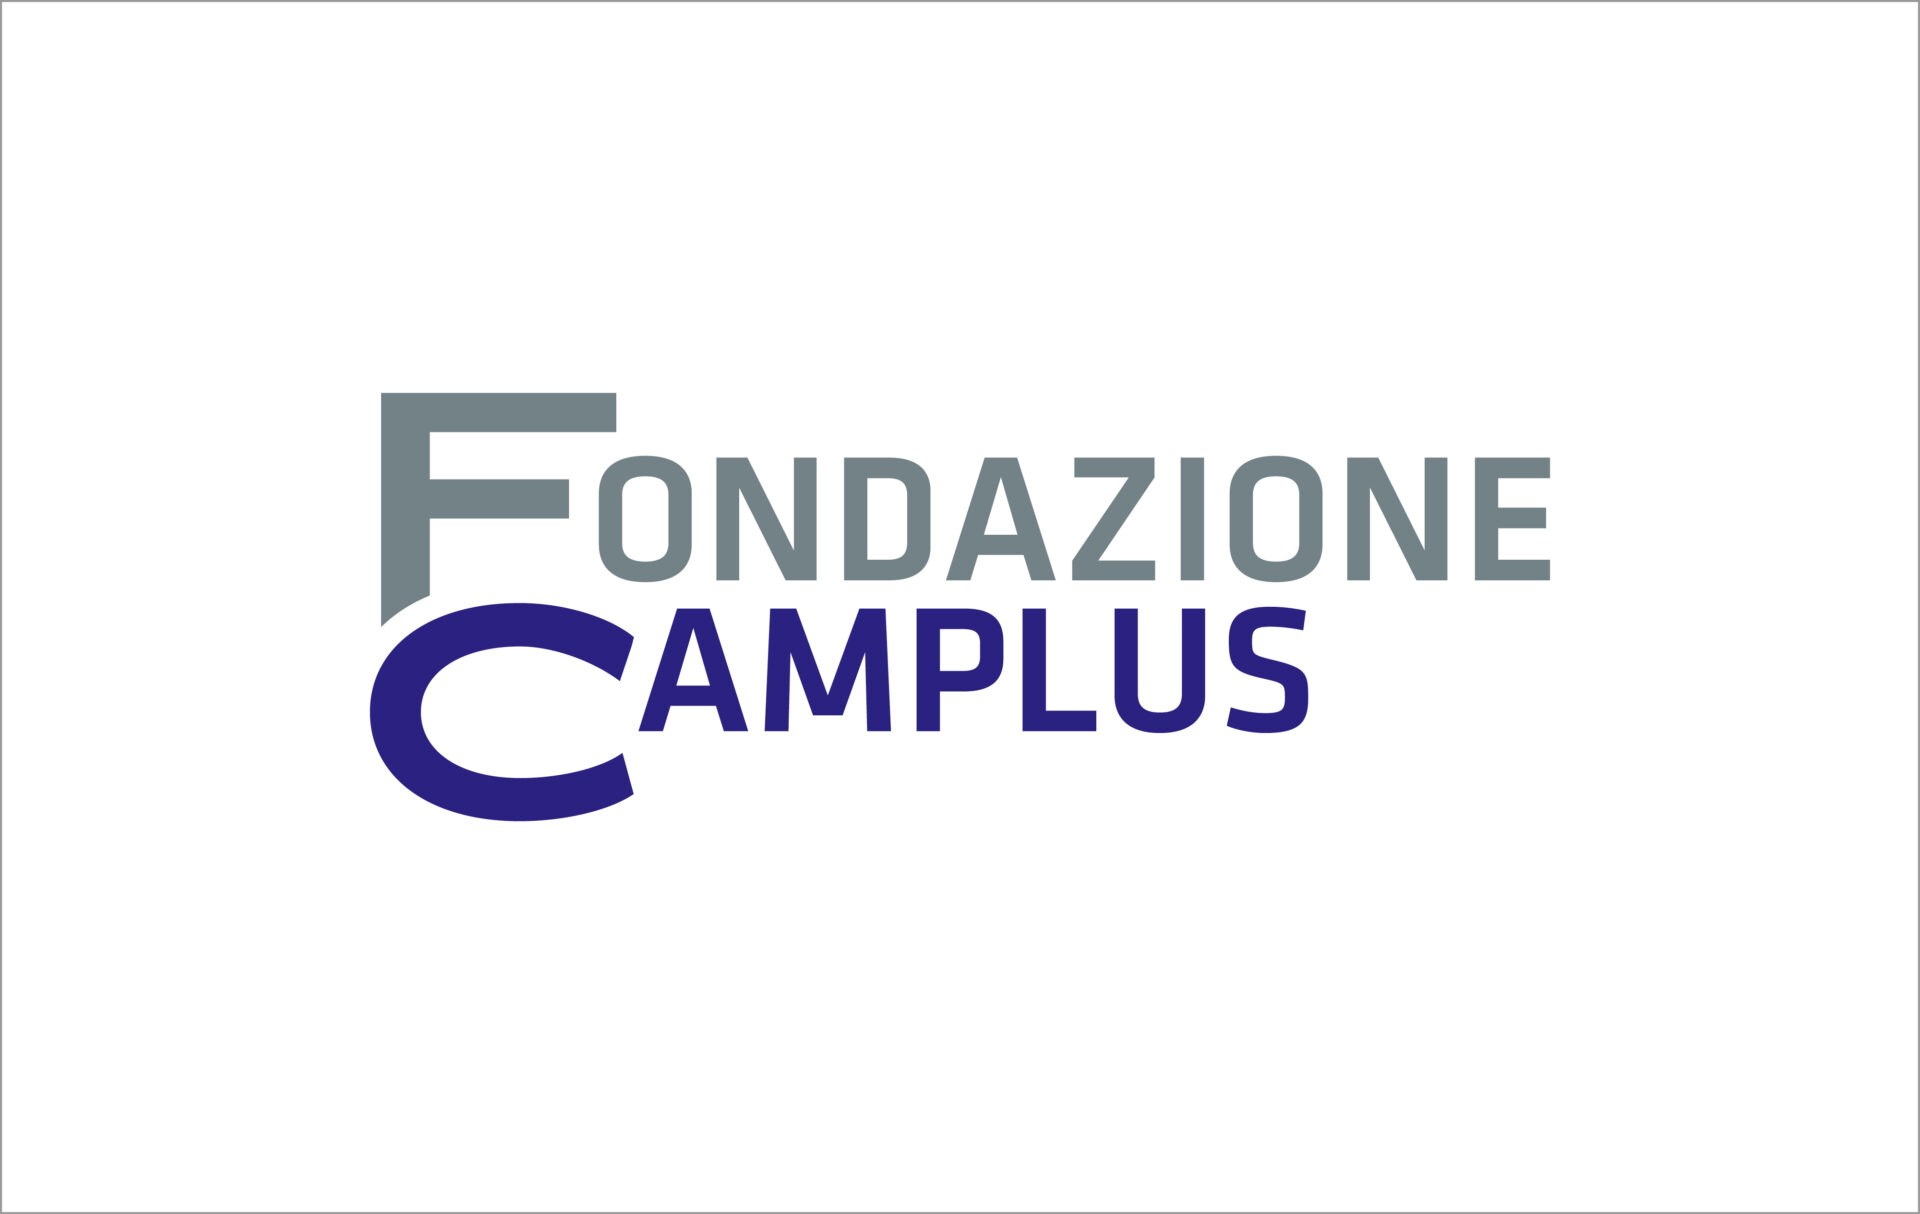 Fondazione Camplus